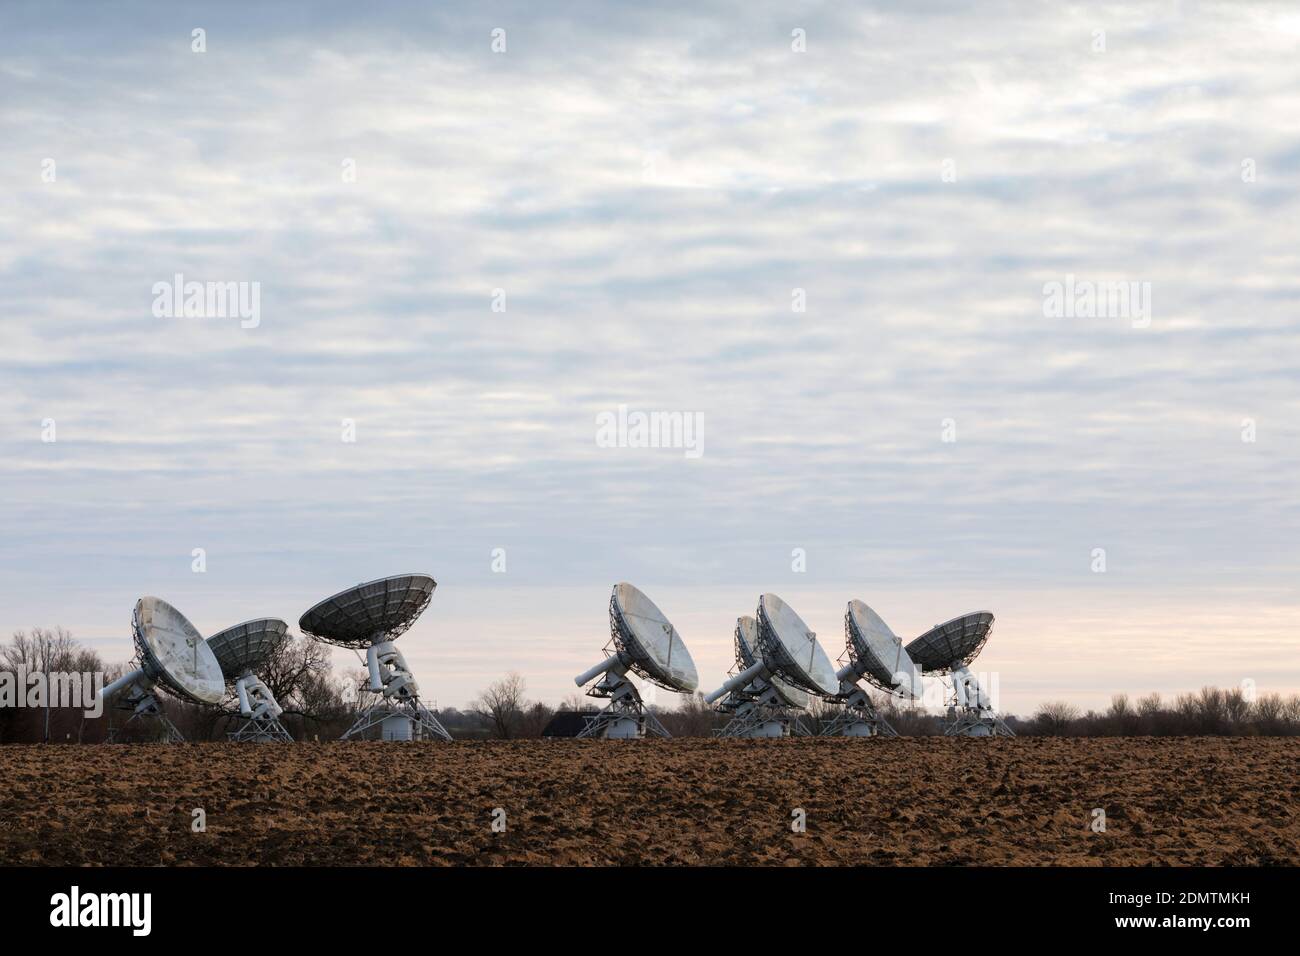 Observatoire de radioastronomie de Mullard radio télescopes, Cambridgeshire, Royaume-Uni Banque D'Images